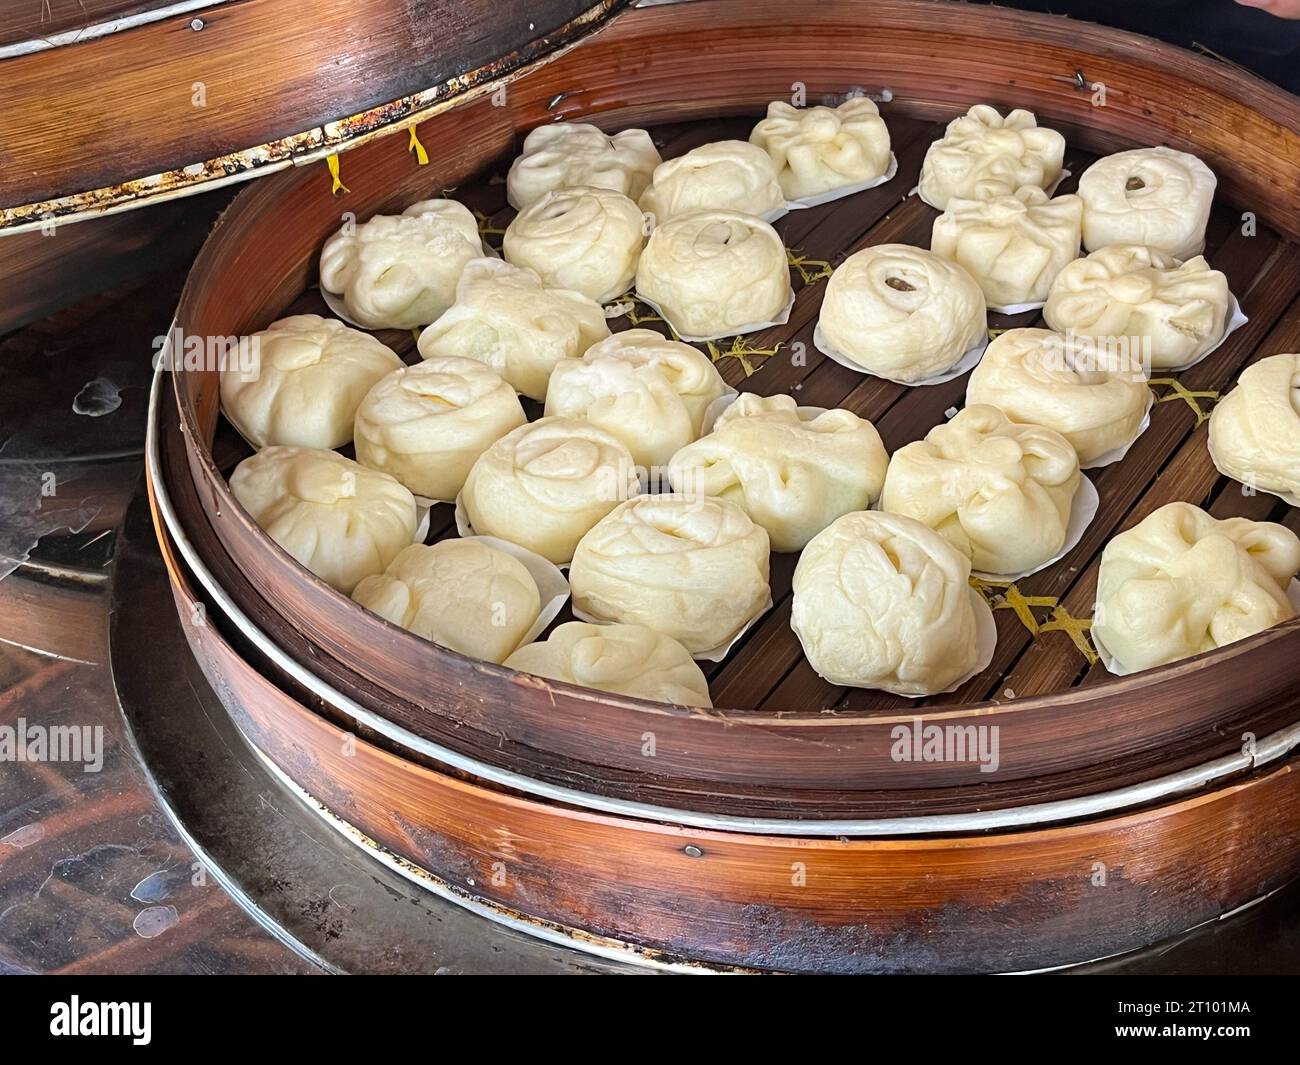 Bakpao, Baozi gedämpftes Brötchen, Pao, Dim Sum in einem Bambusdampfer. Eine Art Hefe-gesäuertes Brötchen in verschiedenen chinesischen Küchen. Stockfoto